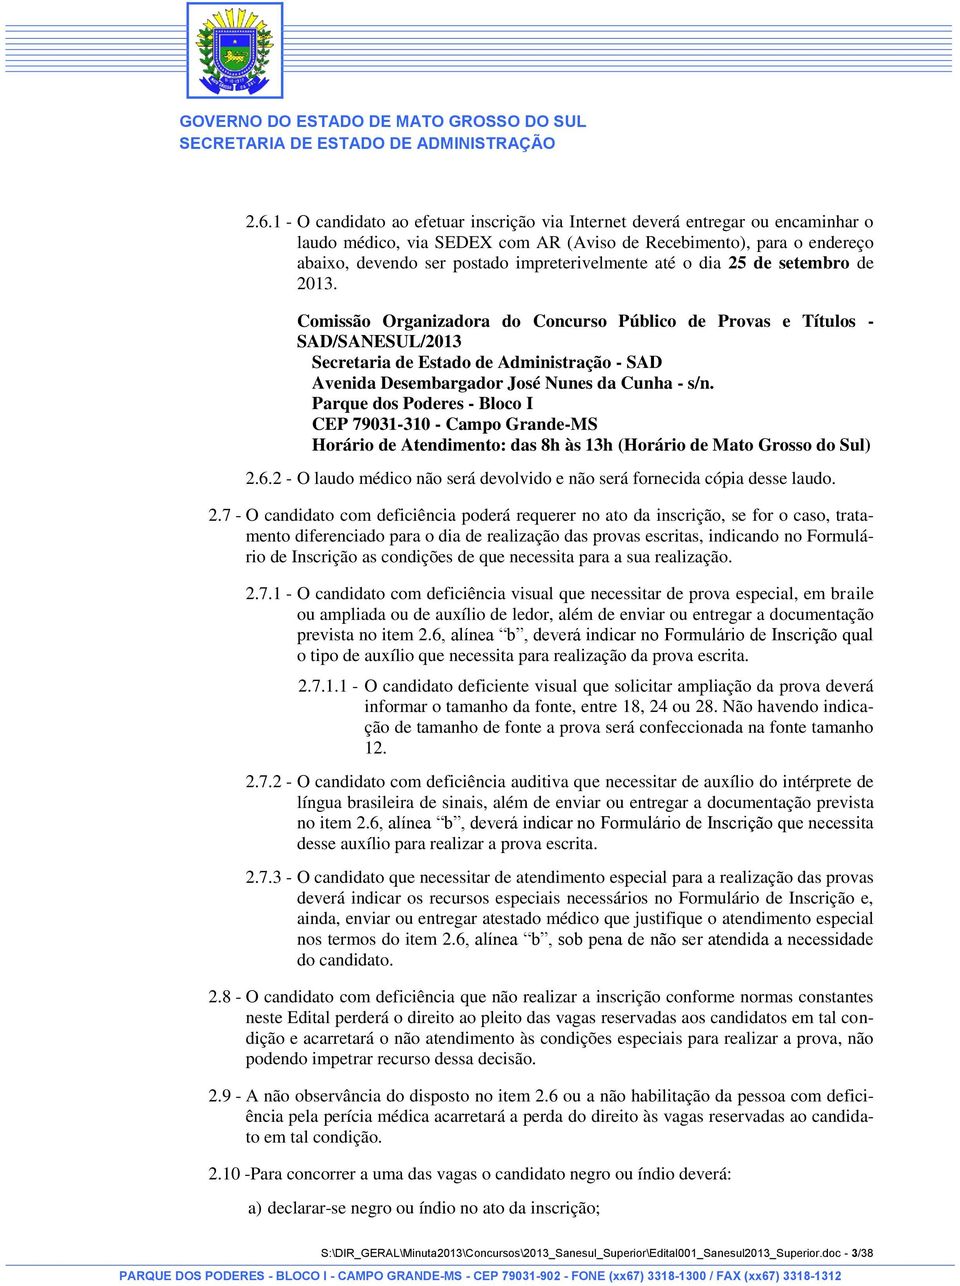 Comissão Organizadora do Concurso Público de Provas e Títulos - SAD/SANESUL/2013 Secretaria de Estado de Administração - SAD Avenida Desembargador José Nunes da Cunha - s/n.